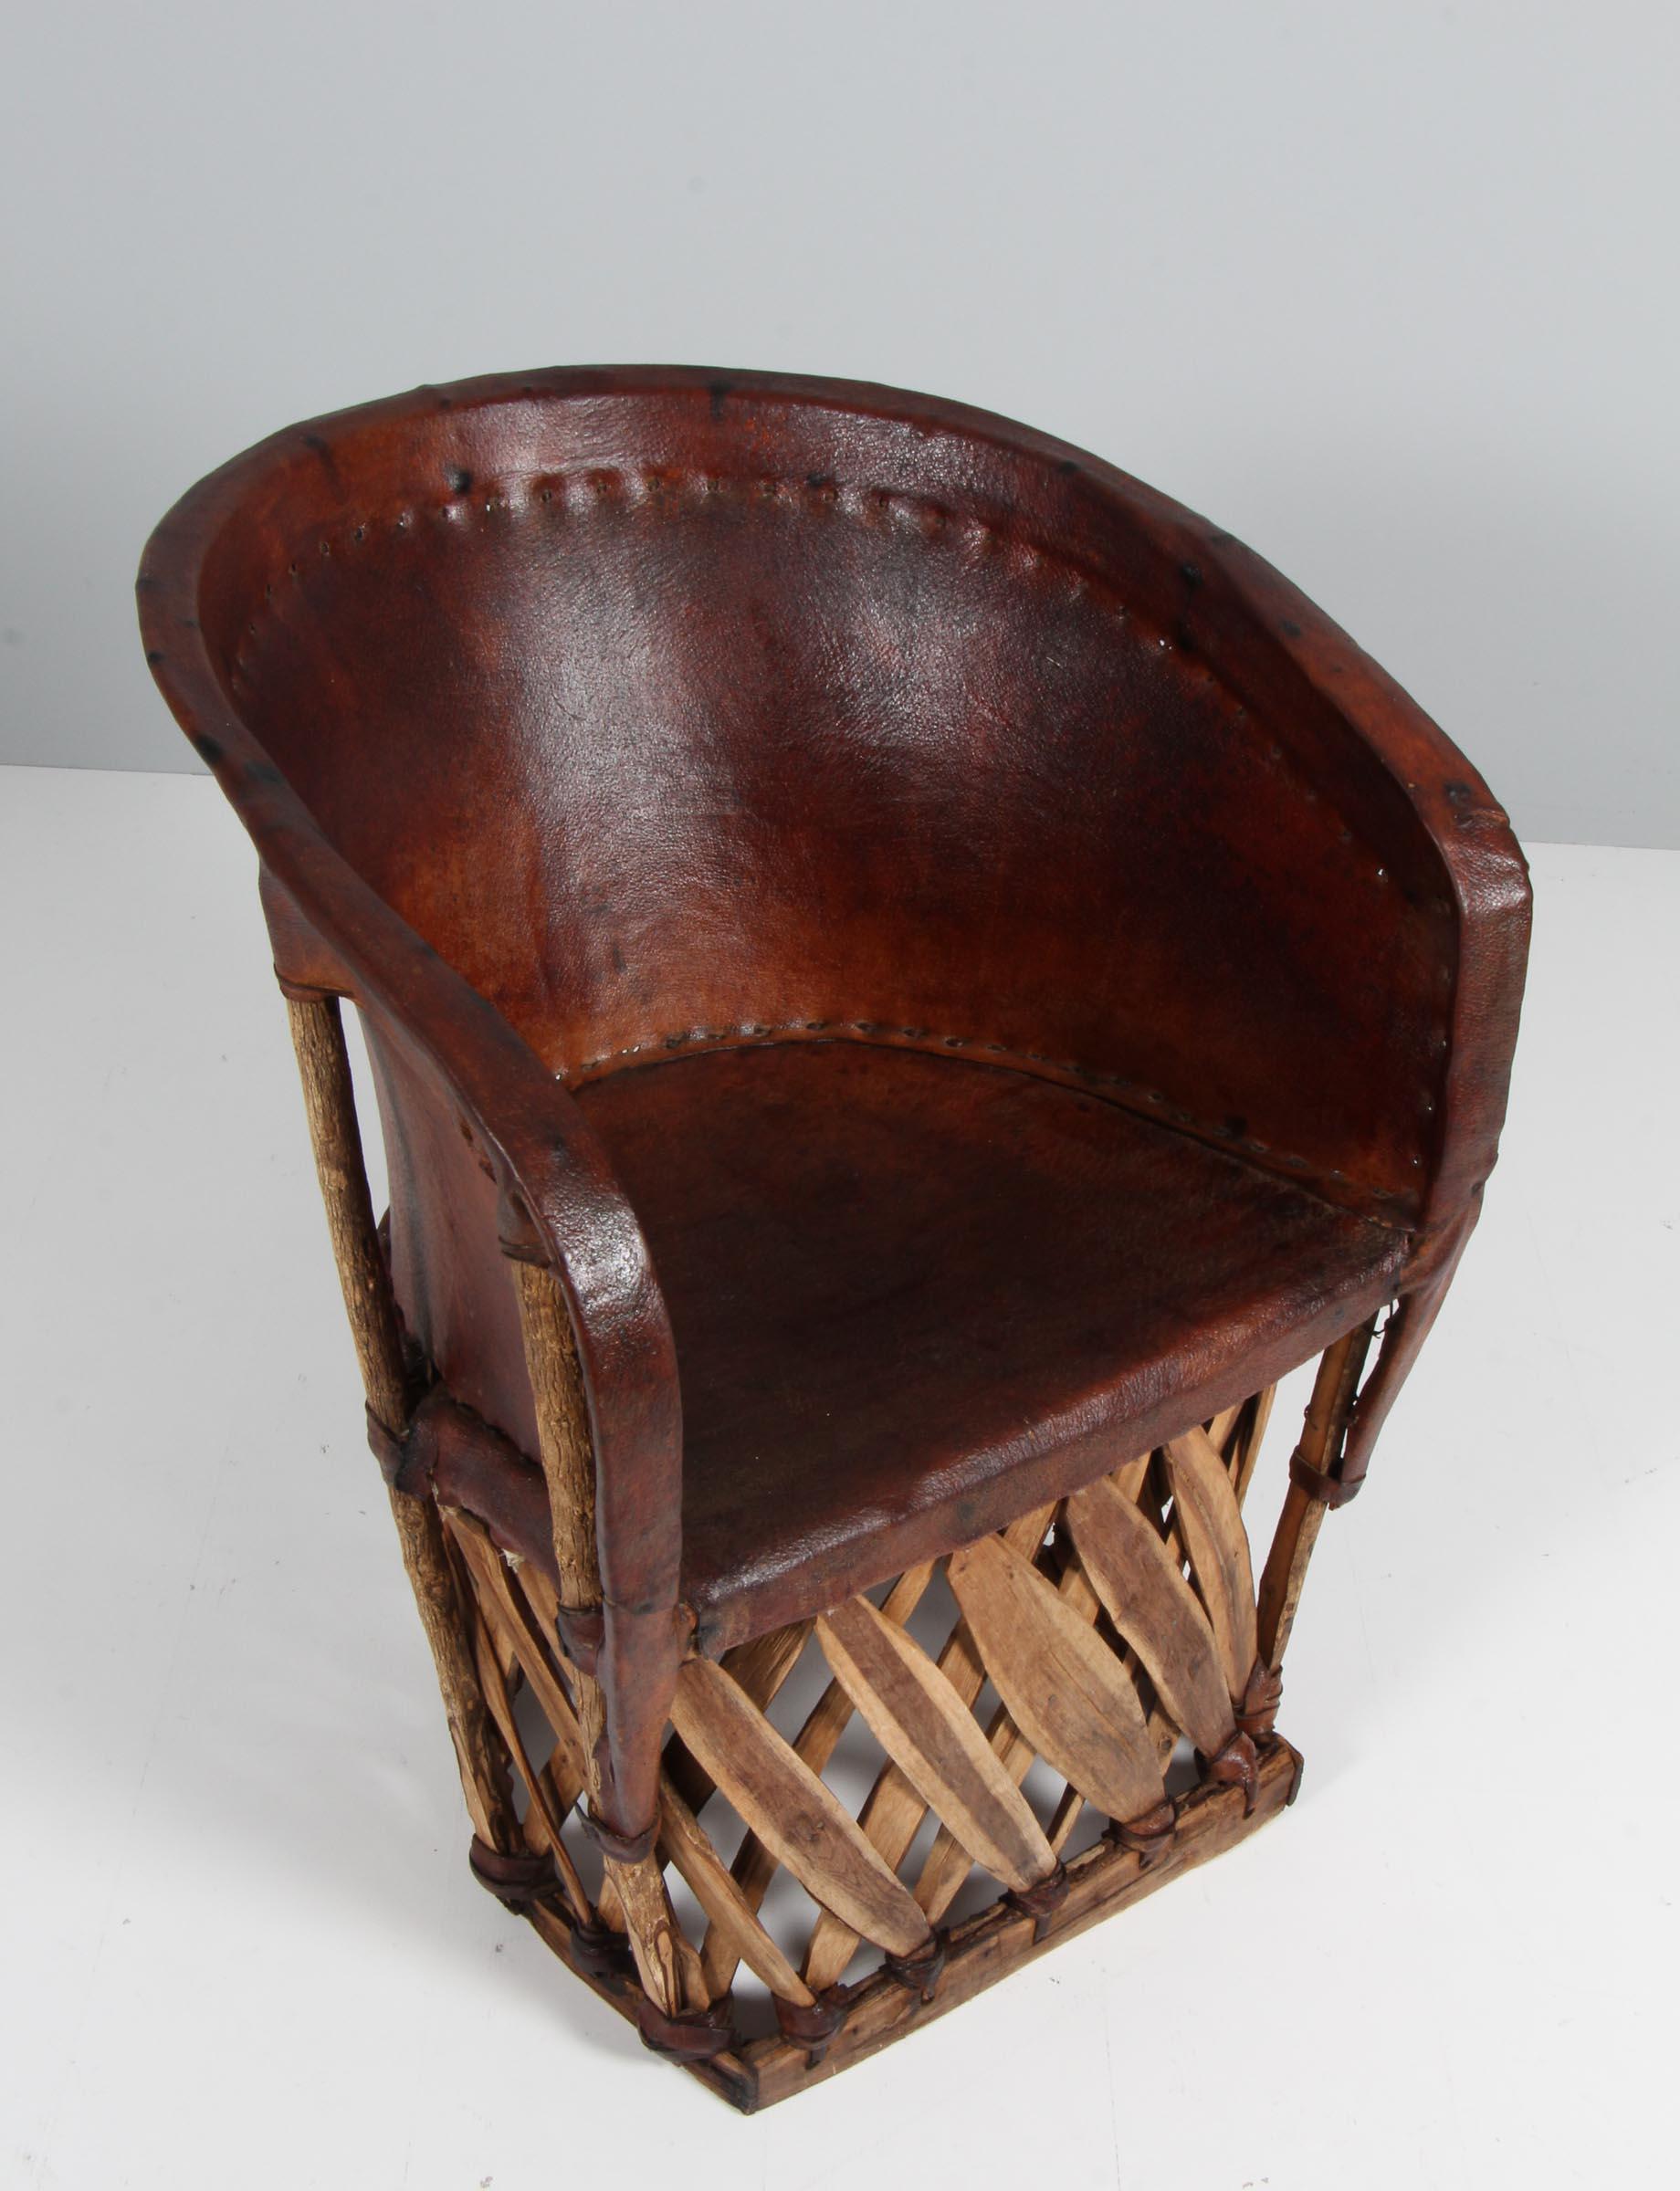 Chaise longue sud-américaine en bois de palmier et cuir patiné.

Fabriqué au 20e siècle.